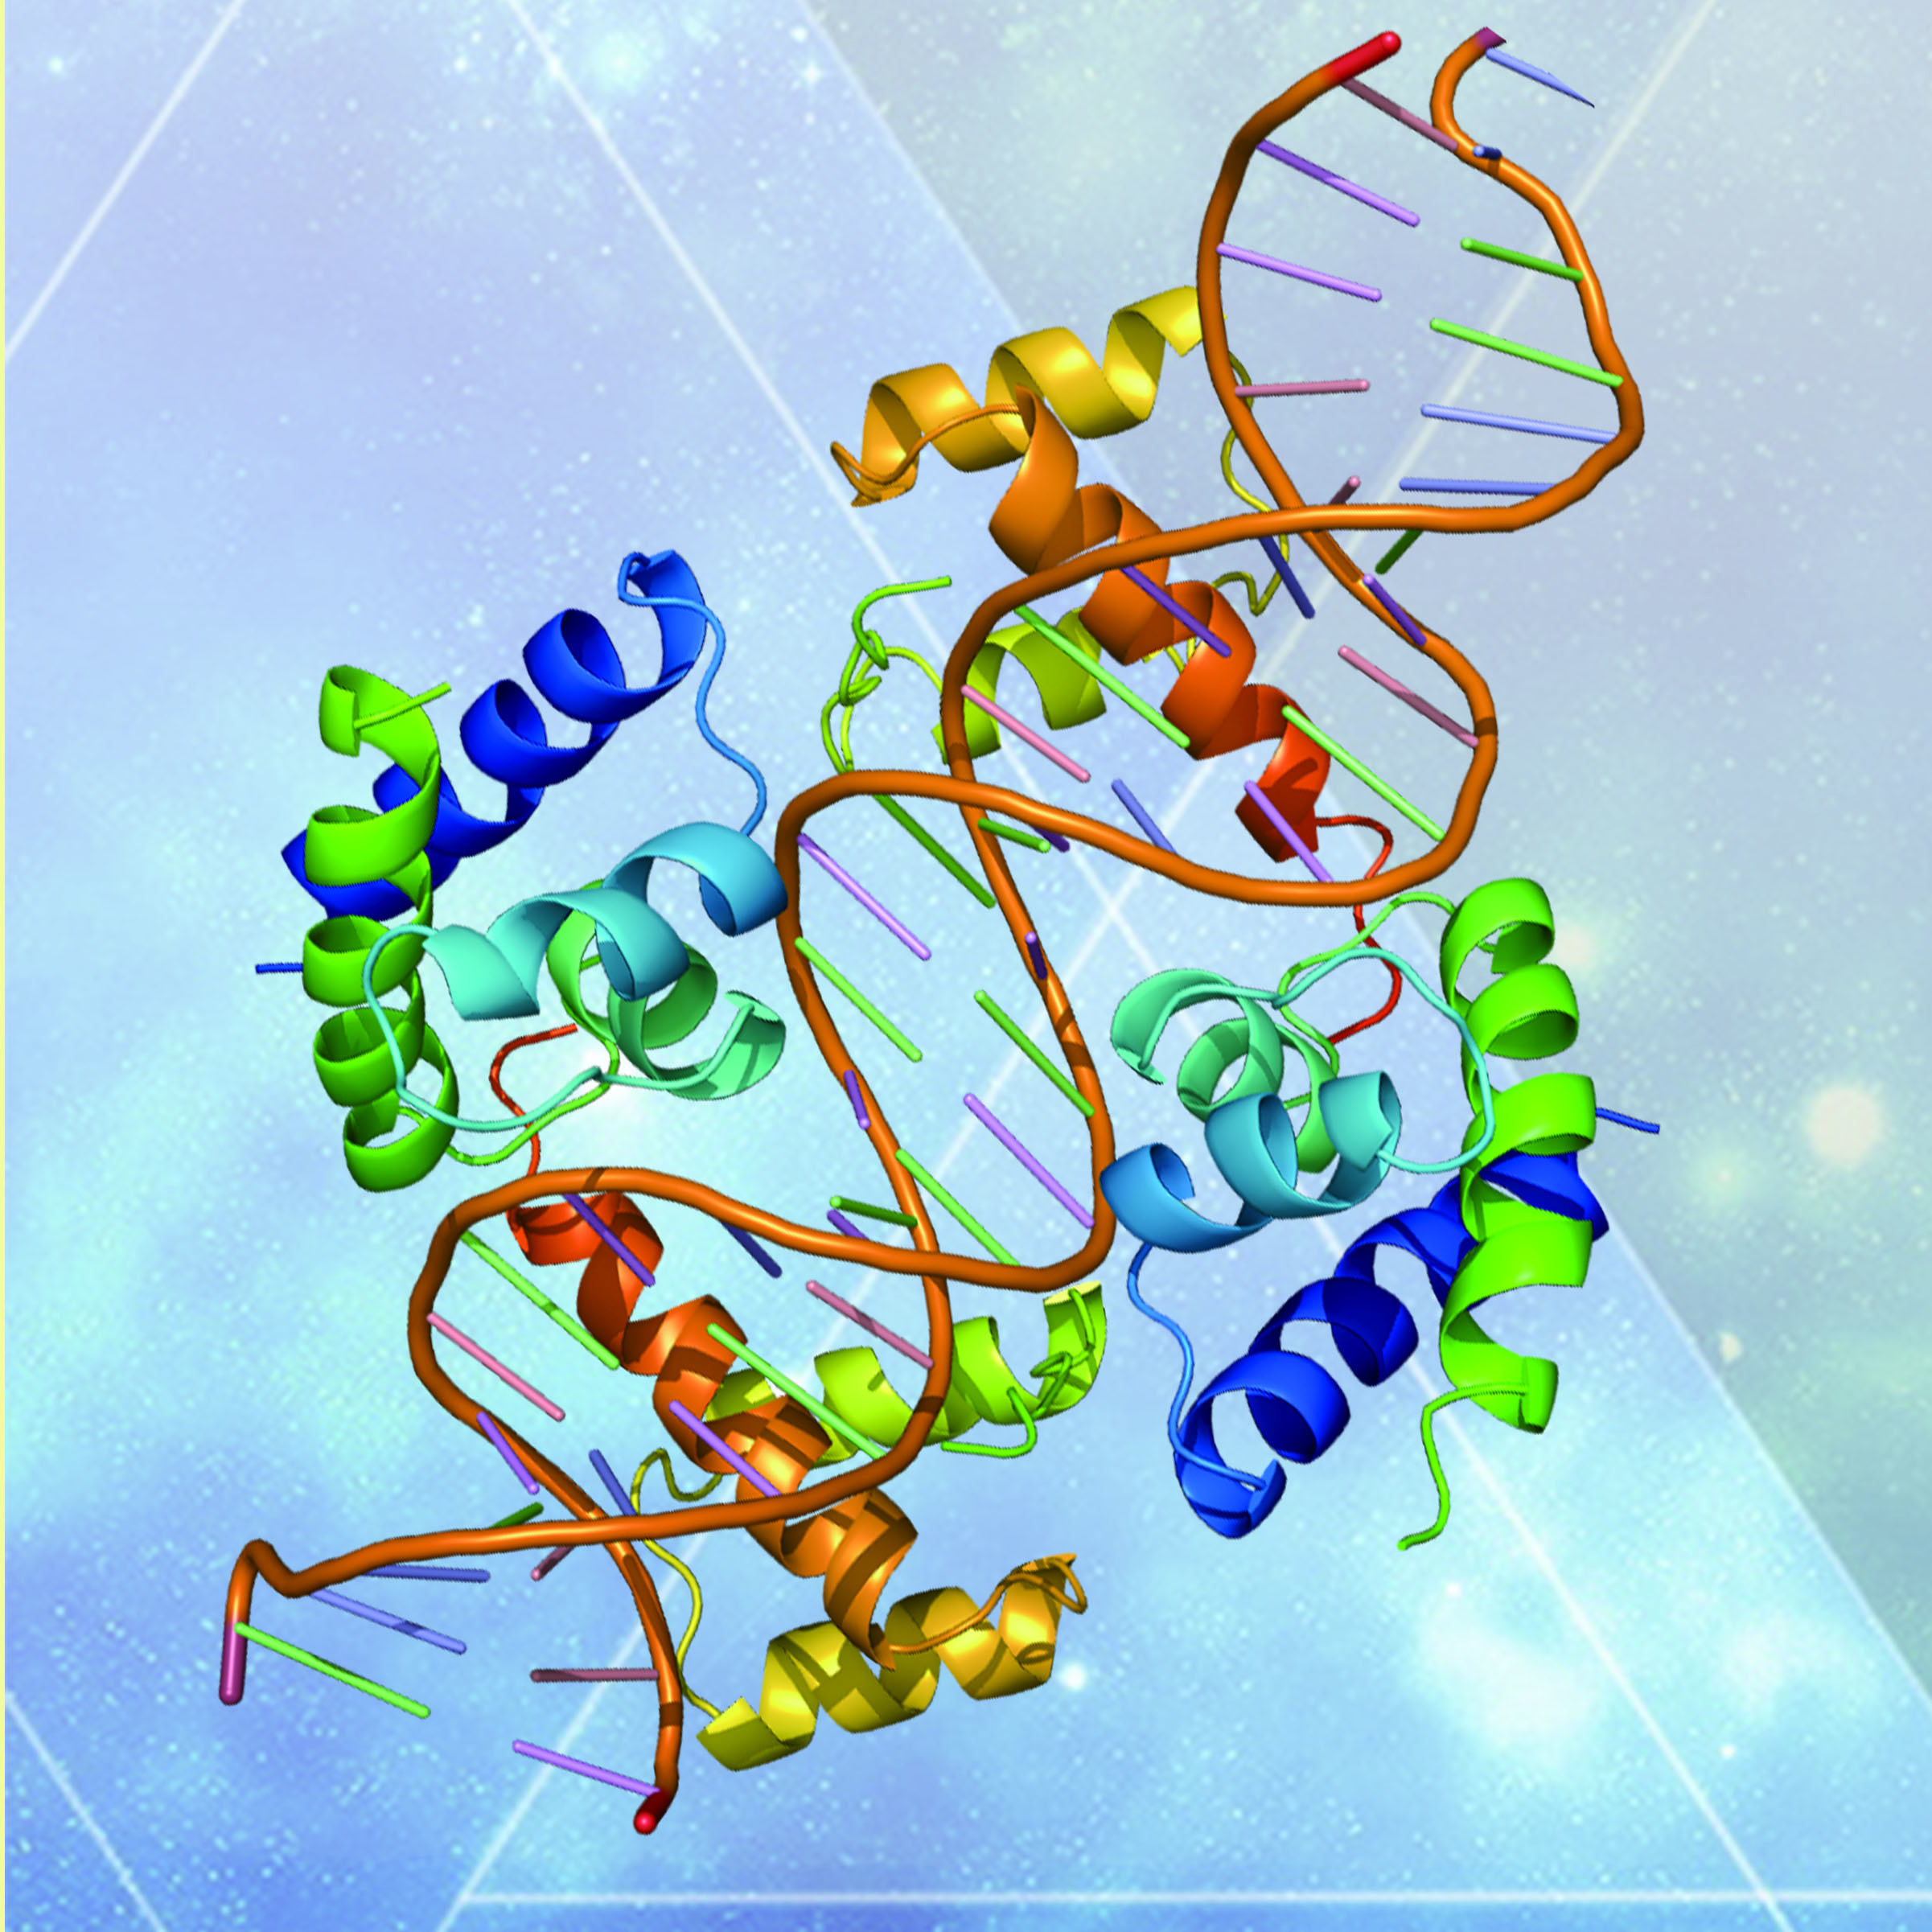 ChIP测序 | 核酸-蛋白互作研究